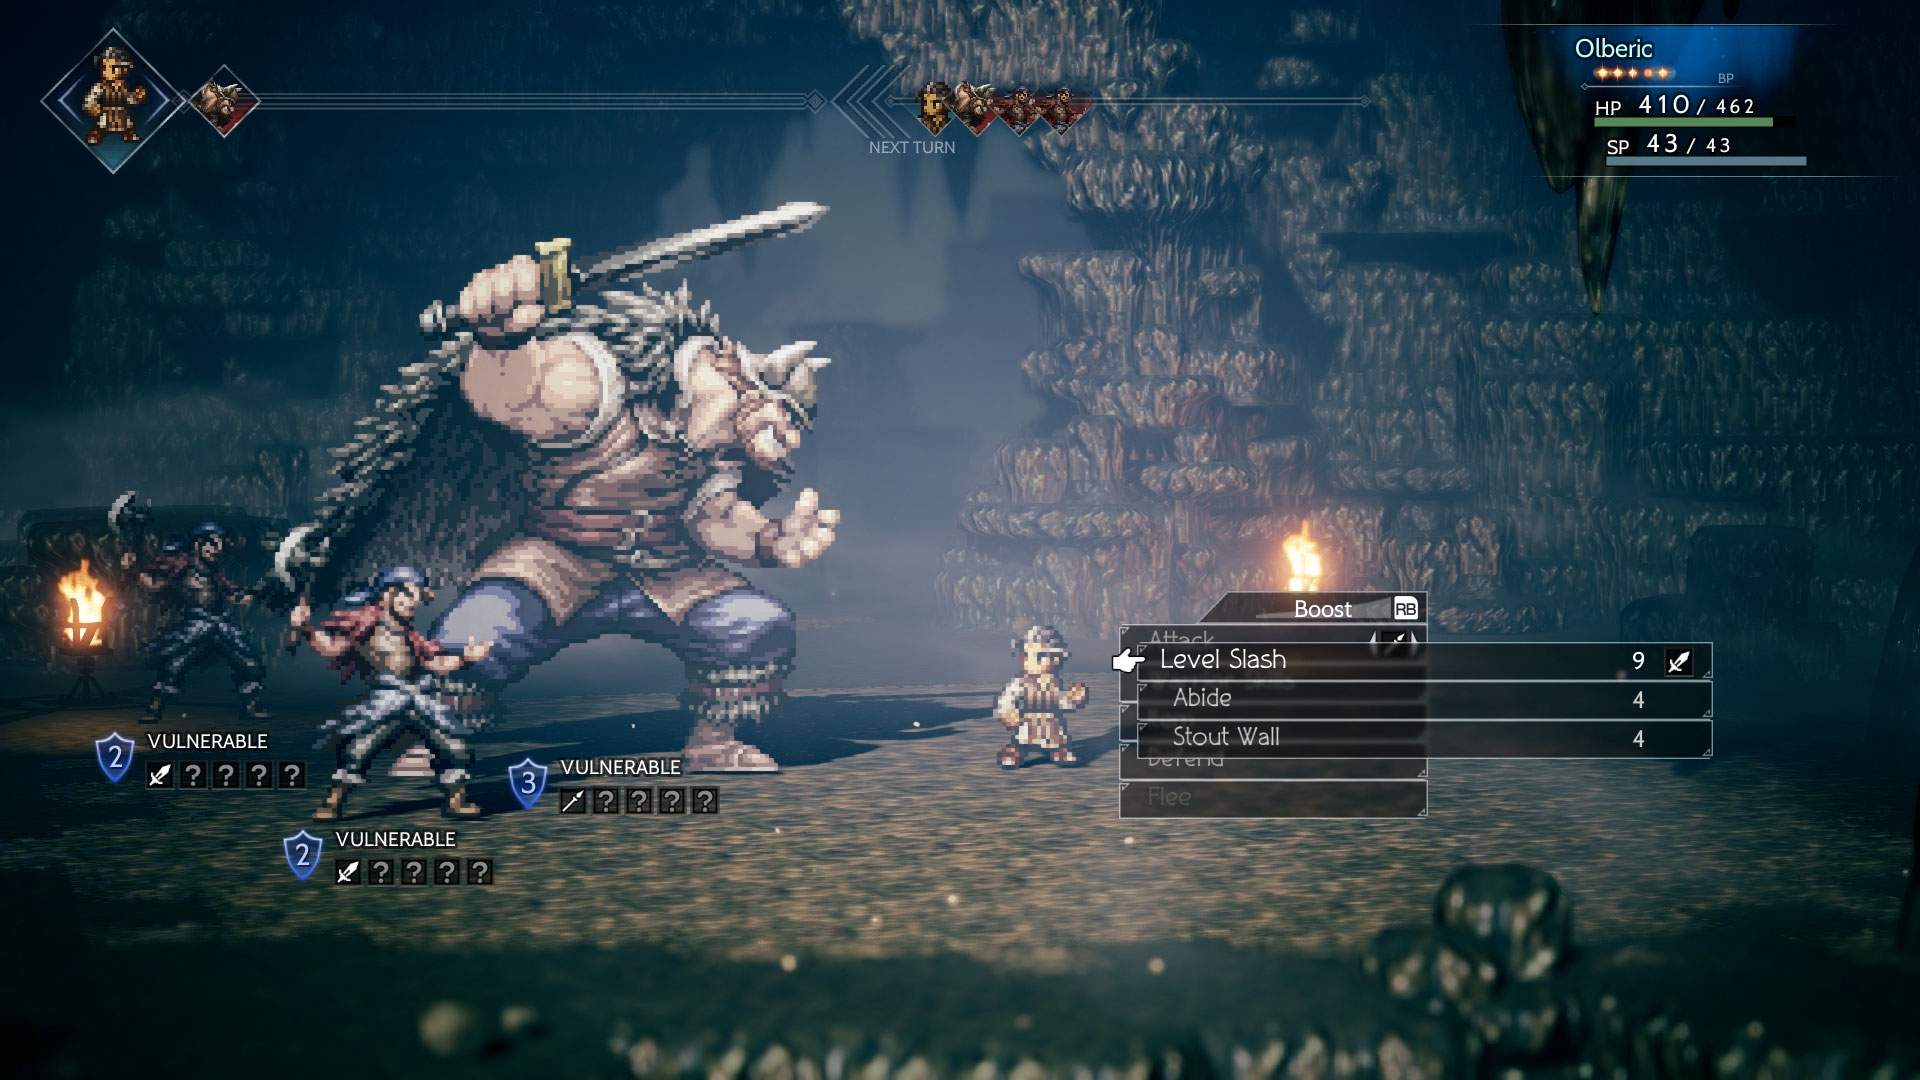 Capture d'écran d'un combat au cours duquel Olberic affronte trois ennemis au tour par tour dans un donjon sombre.